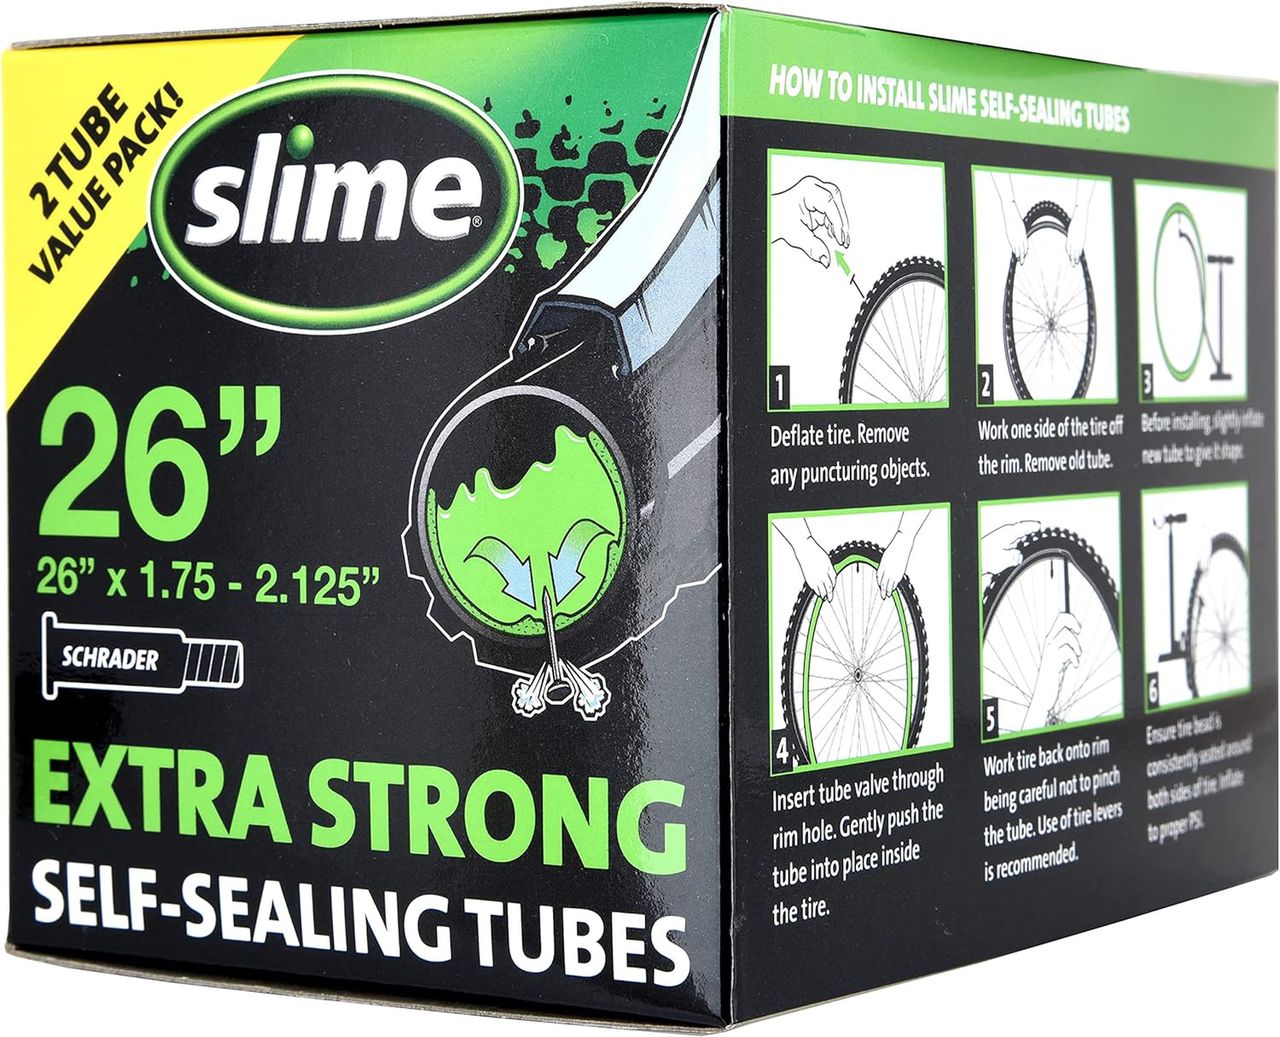 Slime bicycle tube